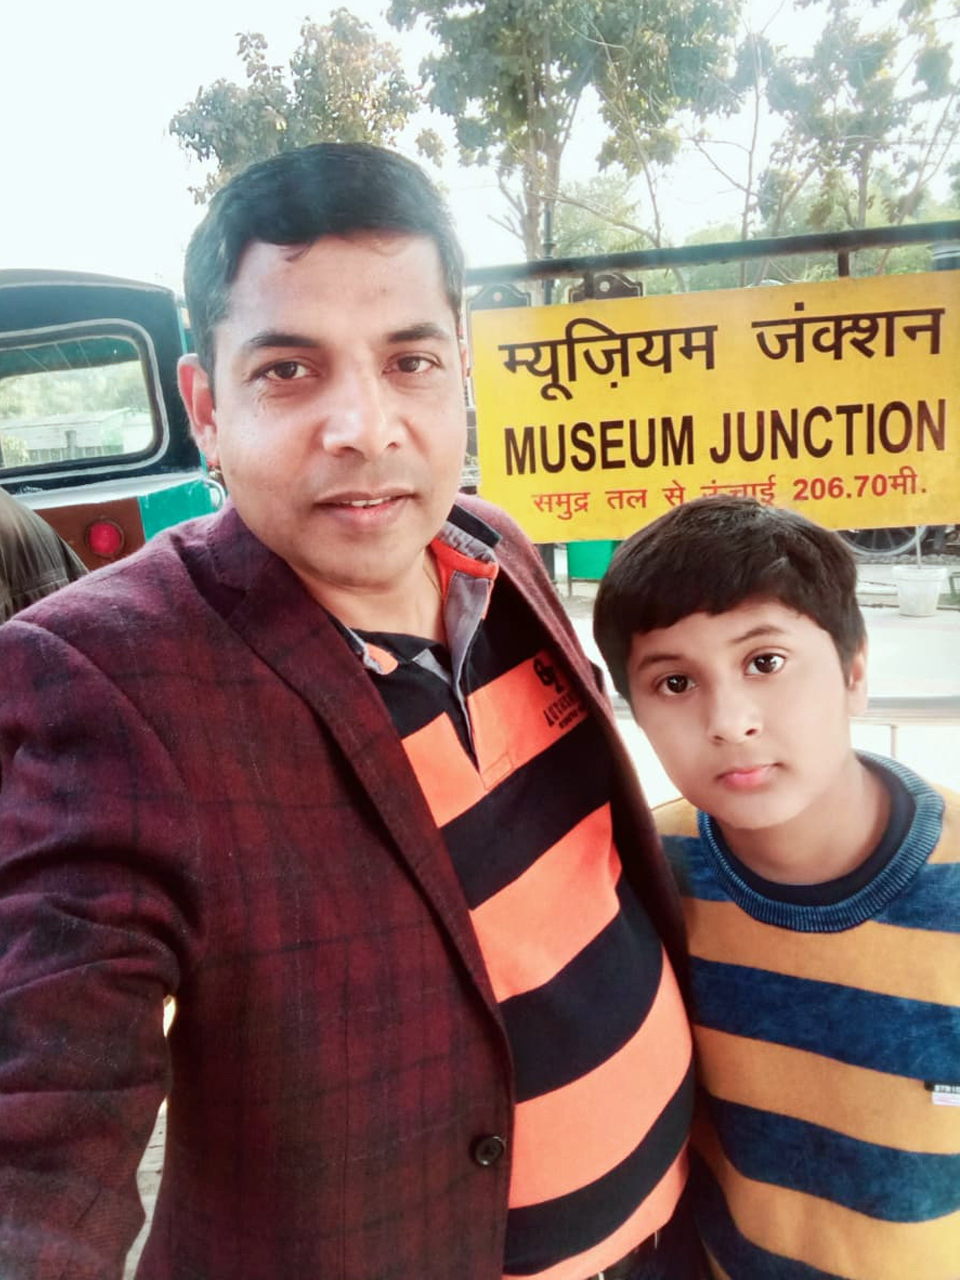 Presidium Rajnagar, FATHER’S DAY - CELEBRATING FATHERHOOD AND PARENTAL BOND